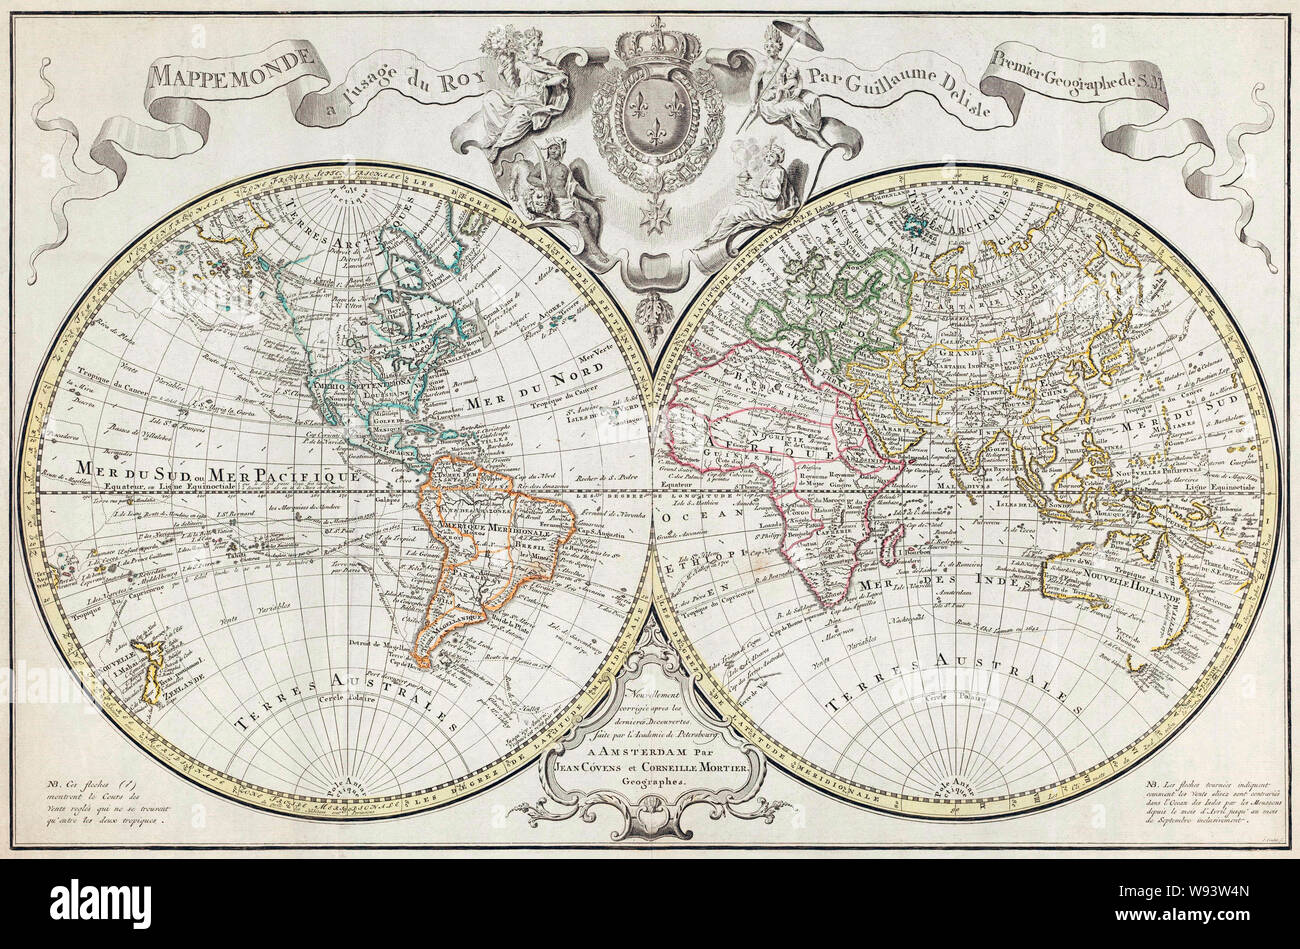 Weltkarte. Eine niederländische Ausgabe von Guillaume De L'Doppel Hemisphäre Karte der Insel der Welt zuerst in Paris im Jahre 1720 veröffentlicht. Es verfügt über markierte Routen der großen Entdecker. Diese Ausgabe stammt aus der zweiten Hälfte des 18. Jahrhunderts enthält neue geographische Kenntnisse, zum Zeitpunkt der ursprünglichen Veröffentlichung nicht bekannt. Stockfoto